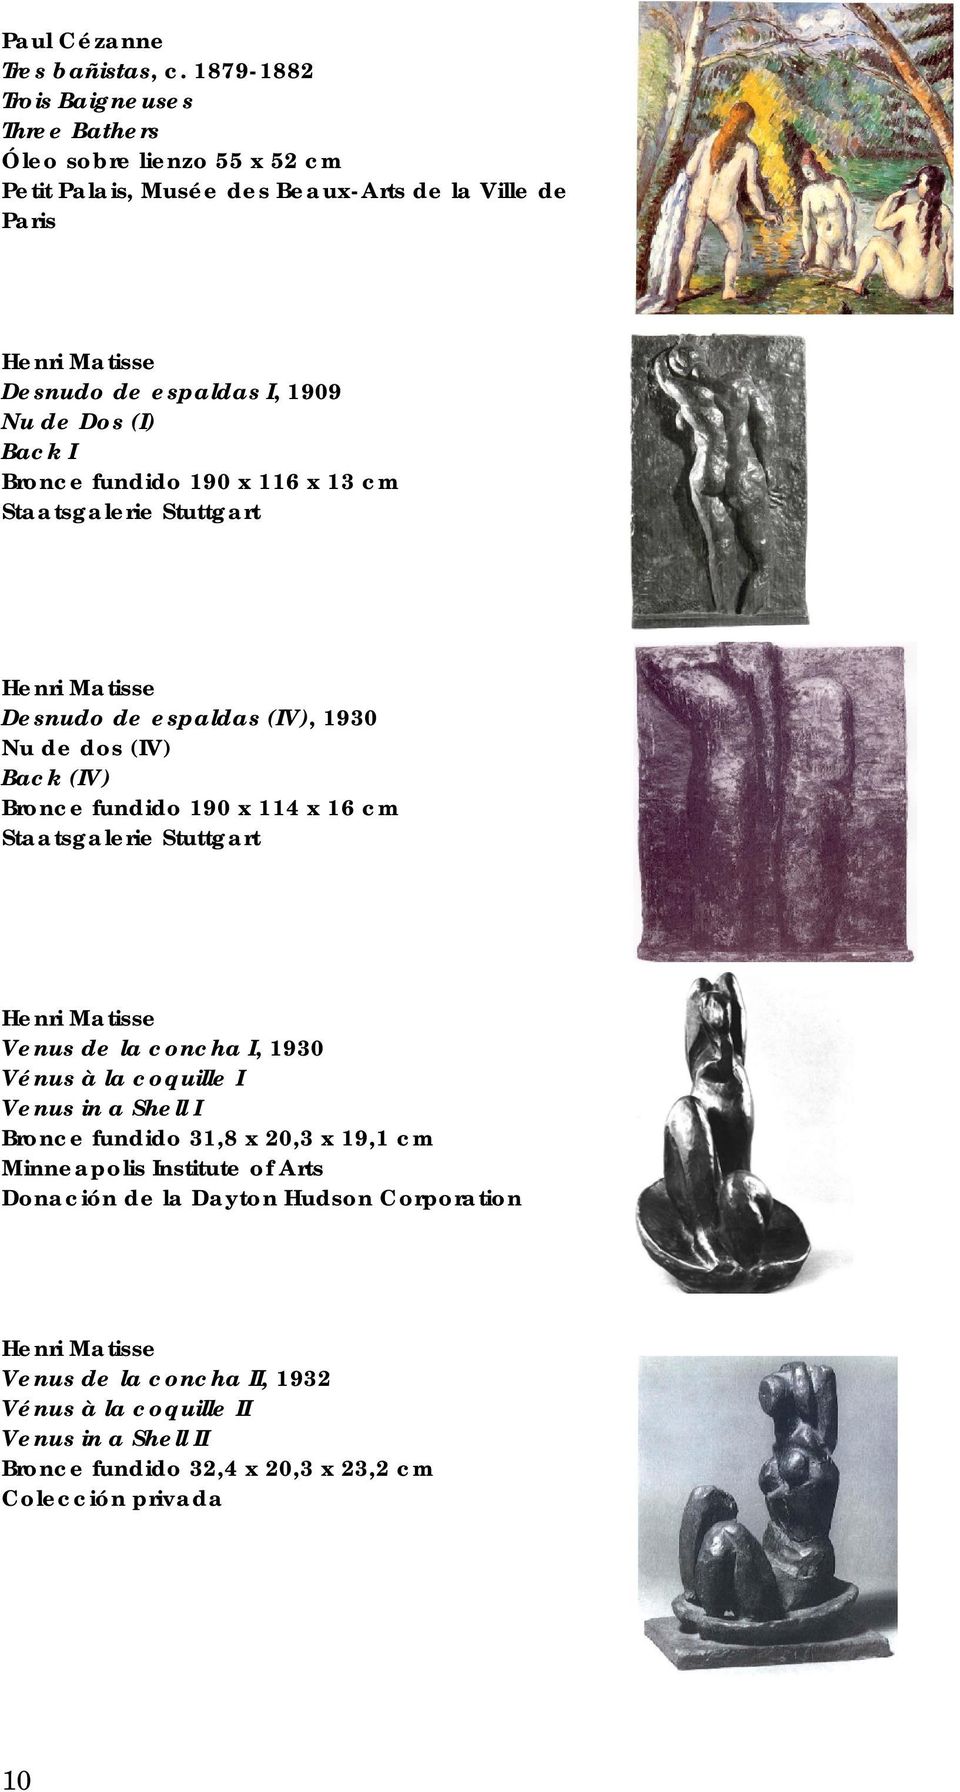 Back I Bronce fundido 190 x 116 x 13 cm Staatsgalerie Stuttgart Desnudo de espaldas (IV), 1930 Nu de dos (IV) Back (IV) Bronce fundido 190 x 114 x 16 cm Staatsgalerie